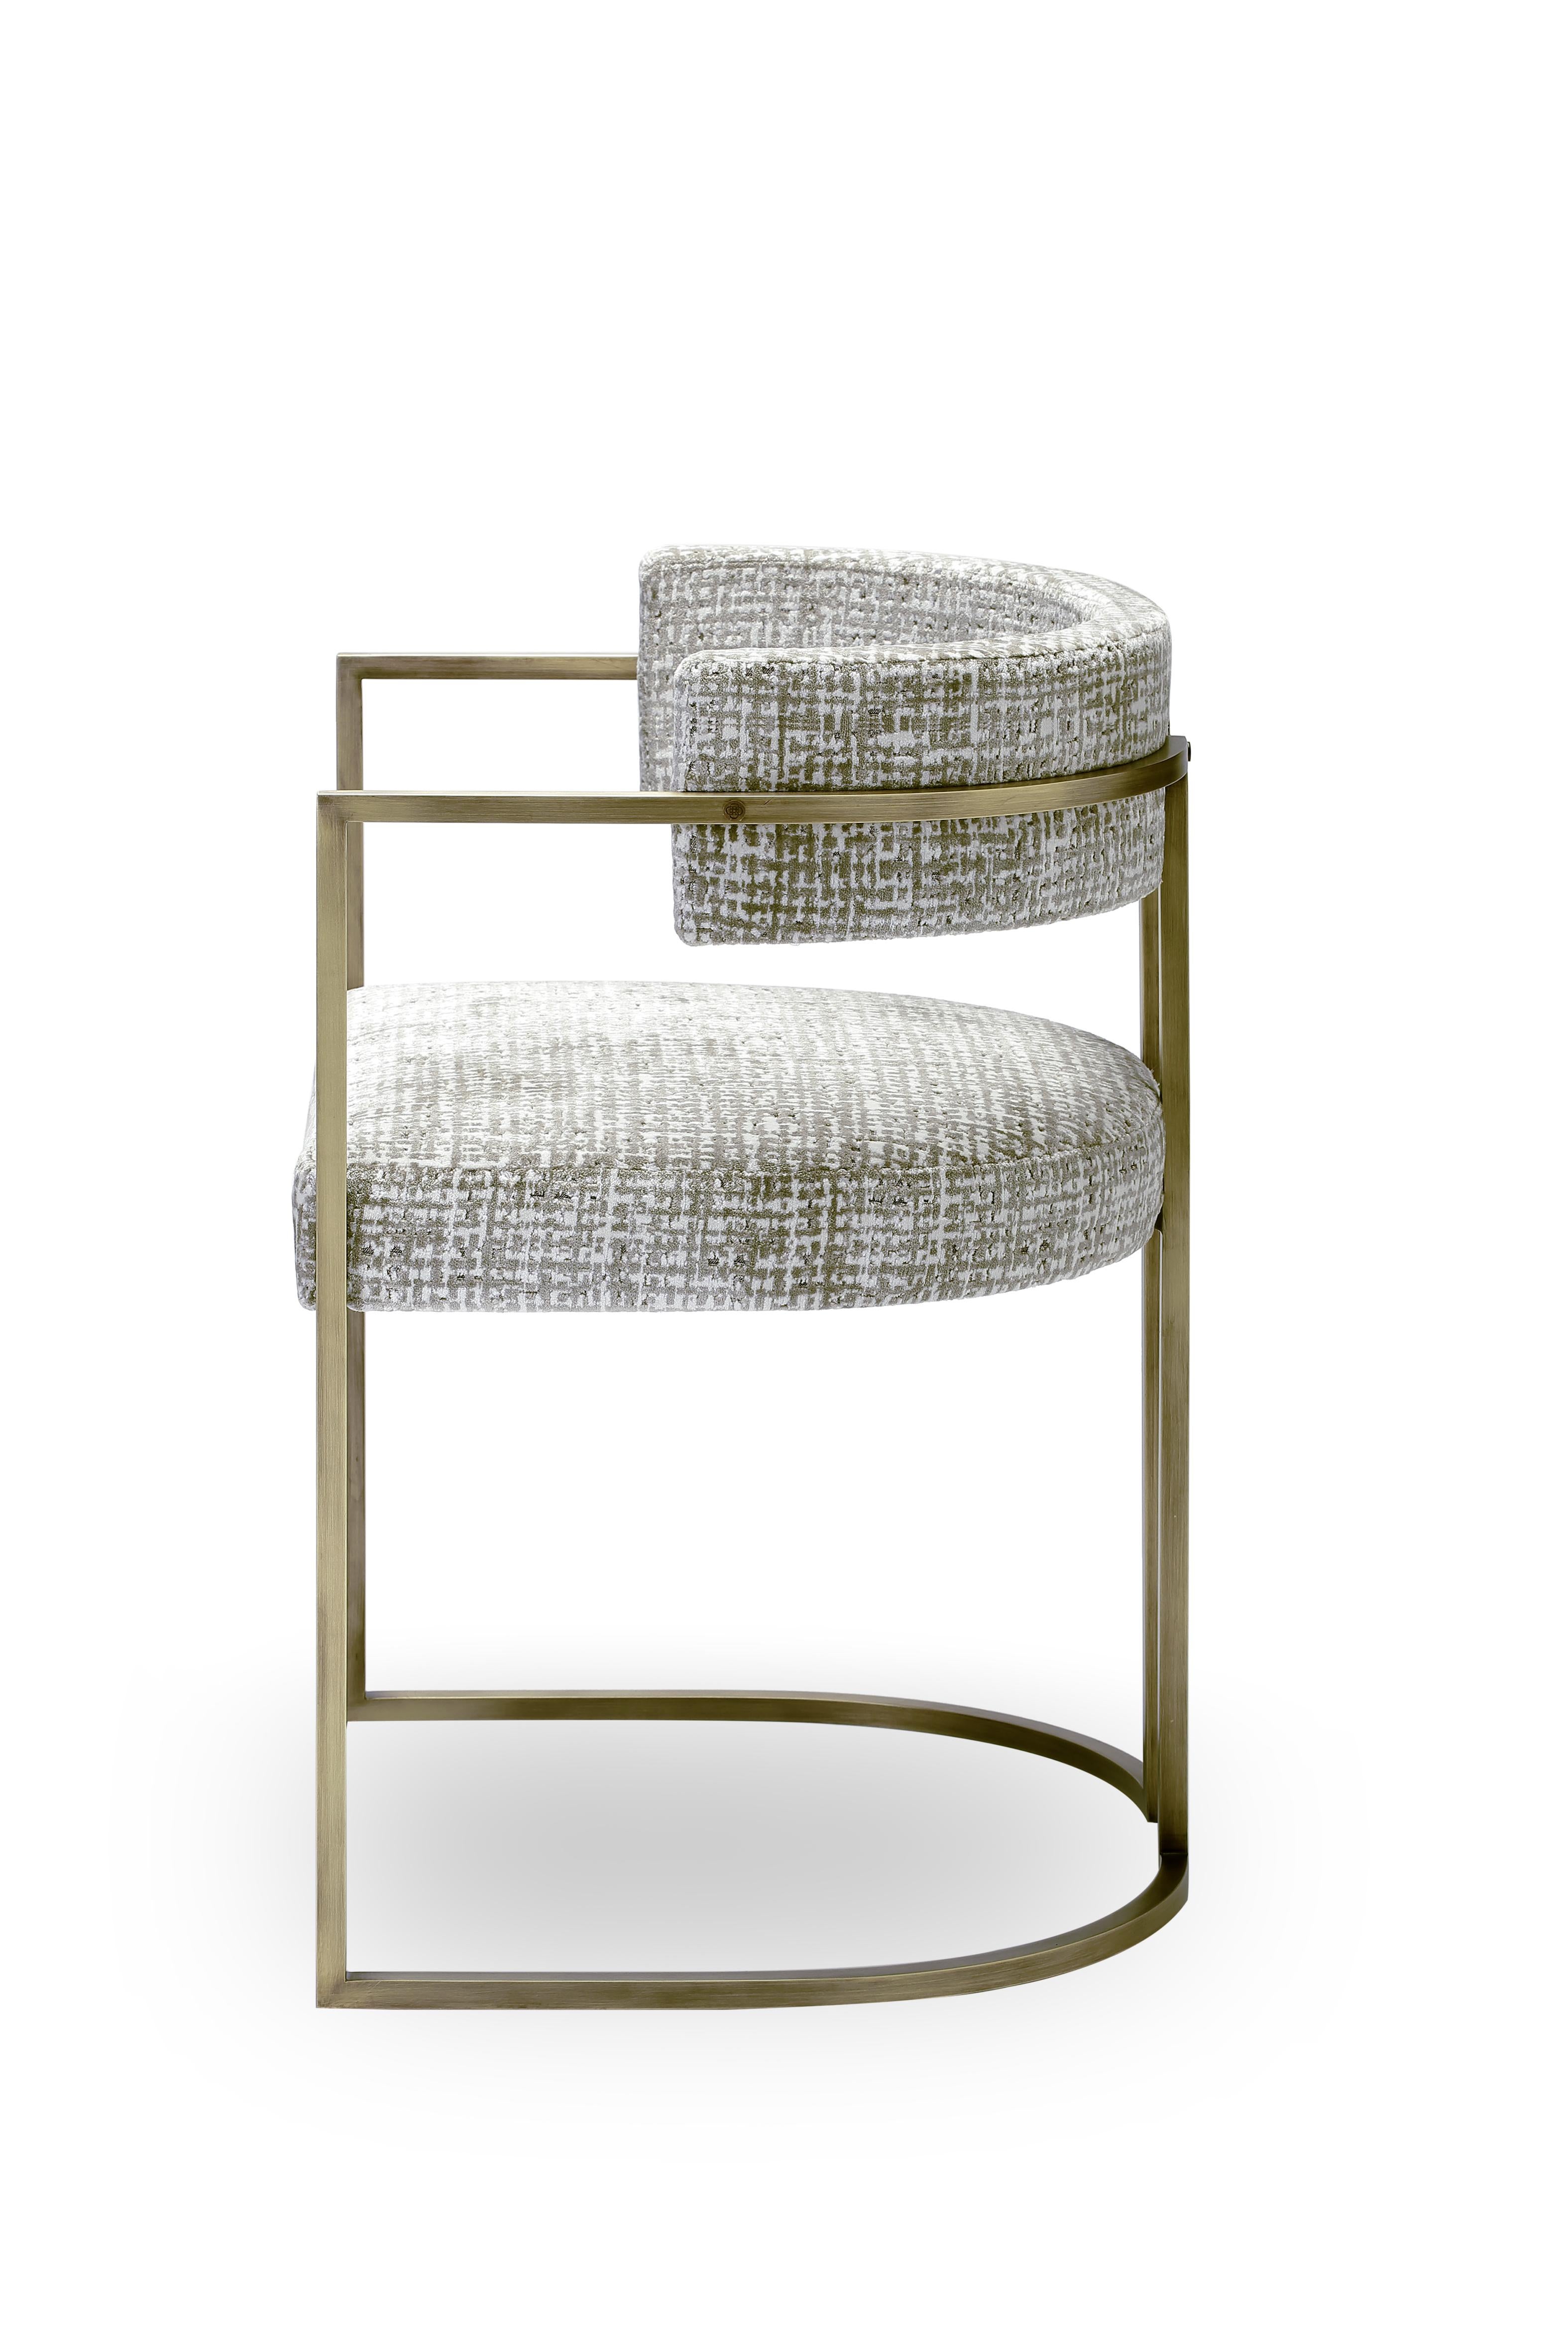 Petite chaise Julius, structure en laiton, fabrication artisanale au Portugal par Duistt 

La petite chaise JULIUS est une pièce de luxe intemporelle et discrète. Construite avec des matériaux nobles comme le laiton, la petite chaise JULIUS est une